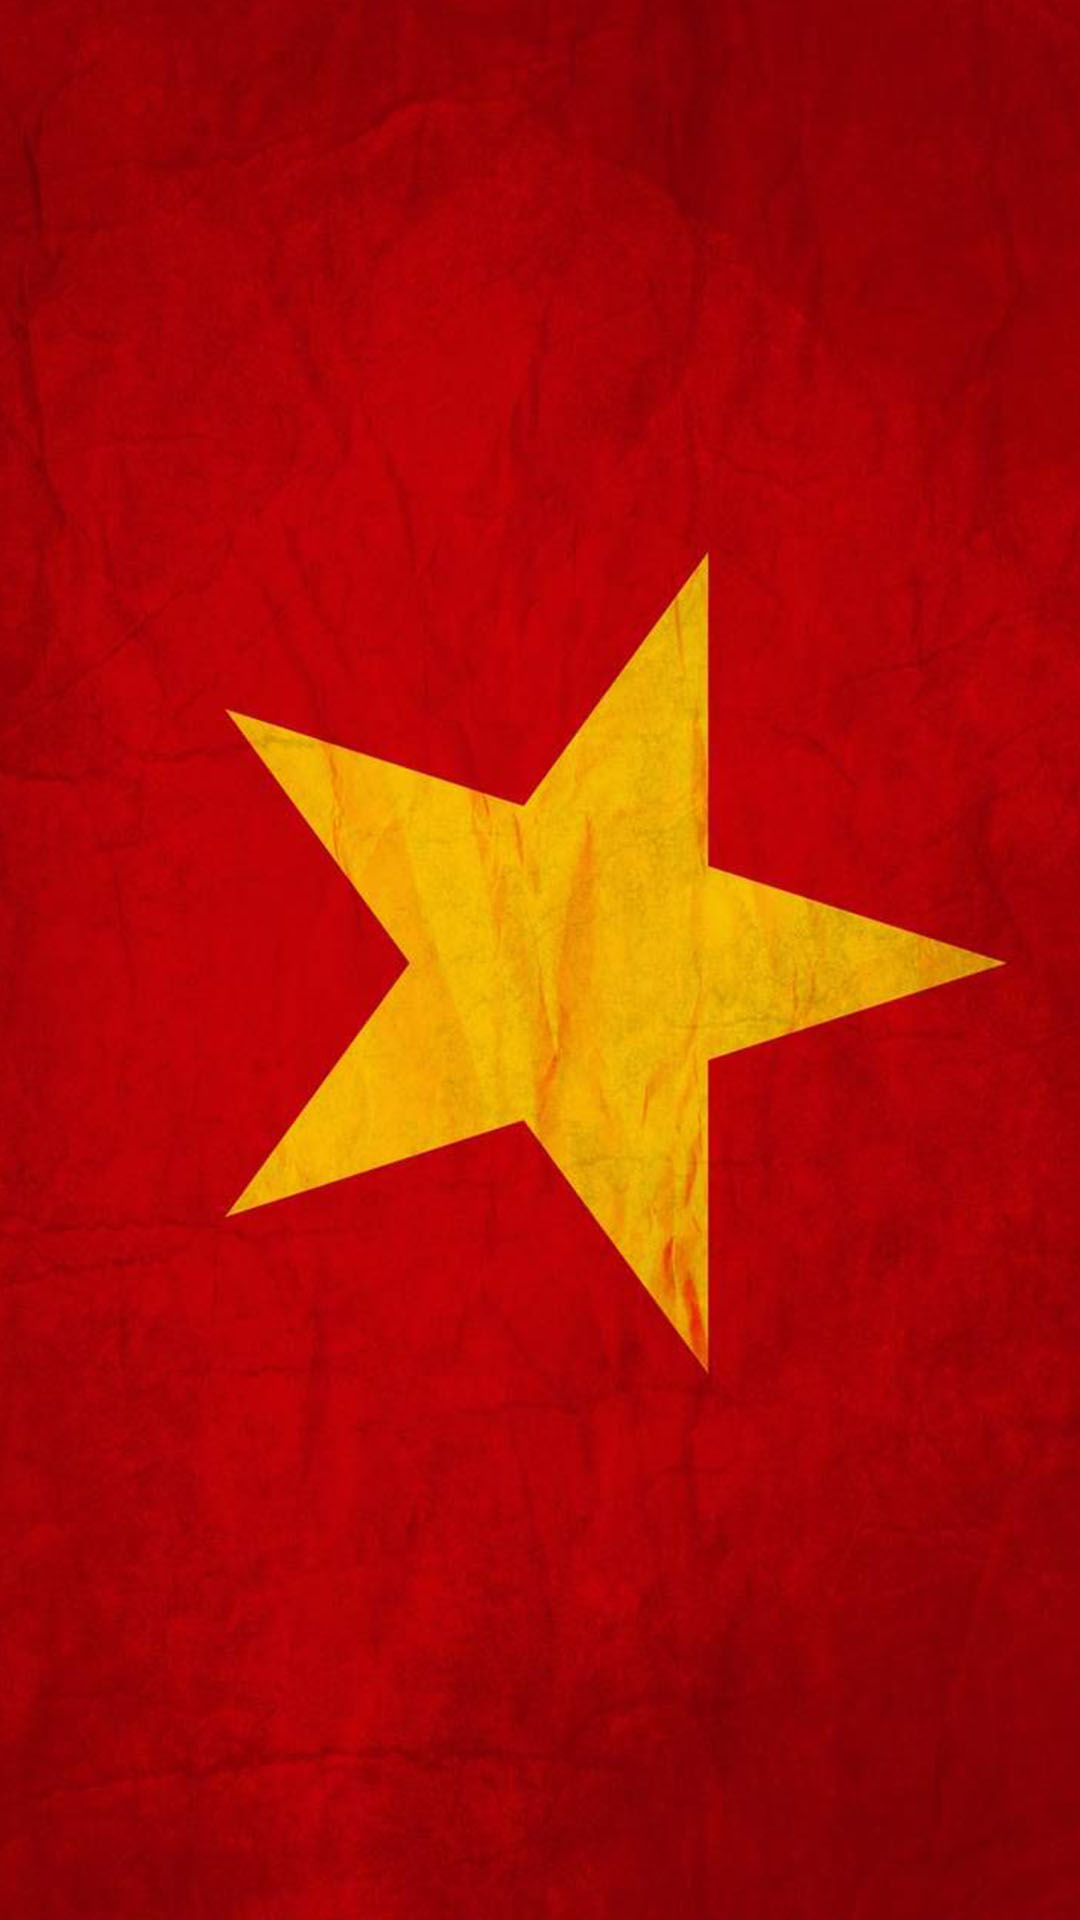 Hình ảnh cờ đỏ sao vàng ý nghĩa 2024: Hình ảnh cờ đỏ sao vàng luôn là biểu tượng vững chắc của dân tộc Việt Nam. Những hình ảnh được cập nhật mới nhất với ý nghĩa sâu sắc, tôn vinh niềm tự hào dân tộc. Hãy khám phá và chia sẻ những hình ảnh này để truyền đi thông điệp yêu nước.